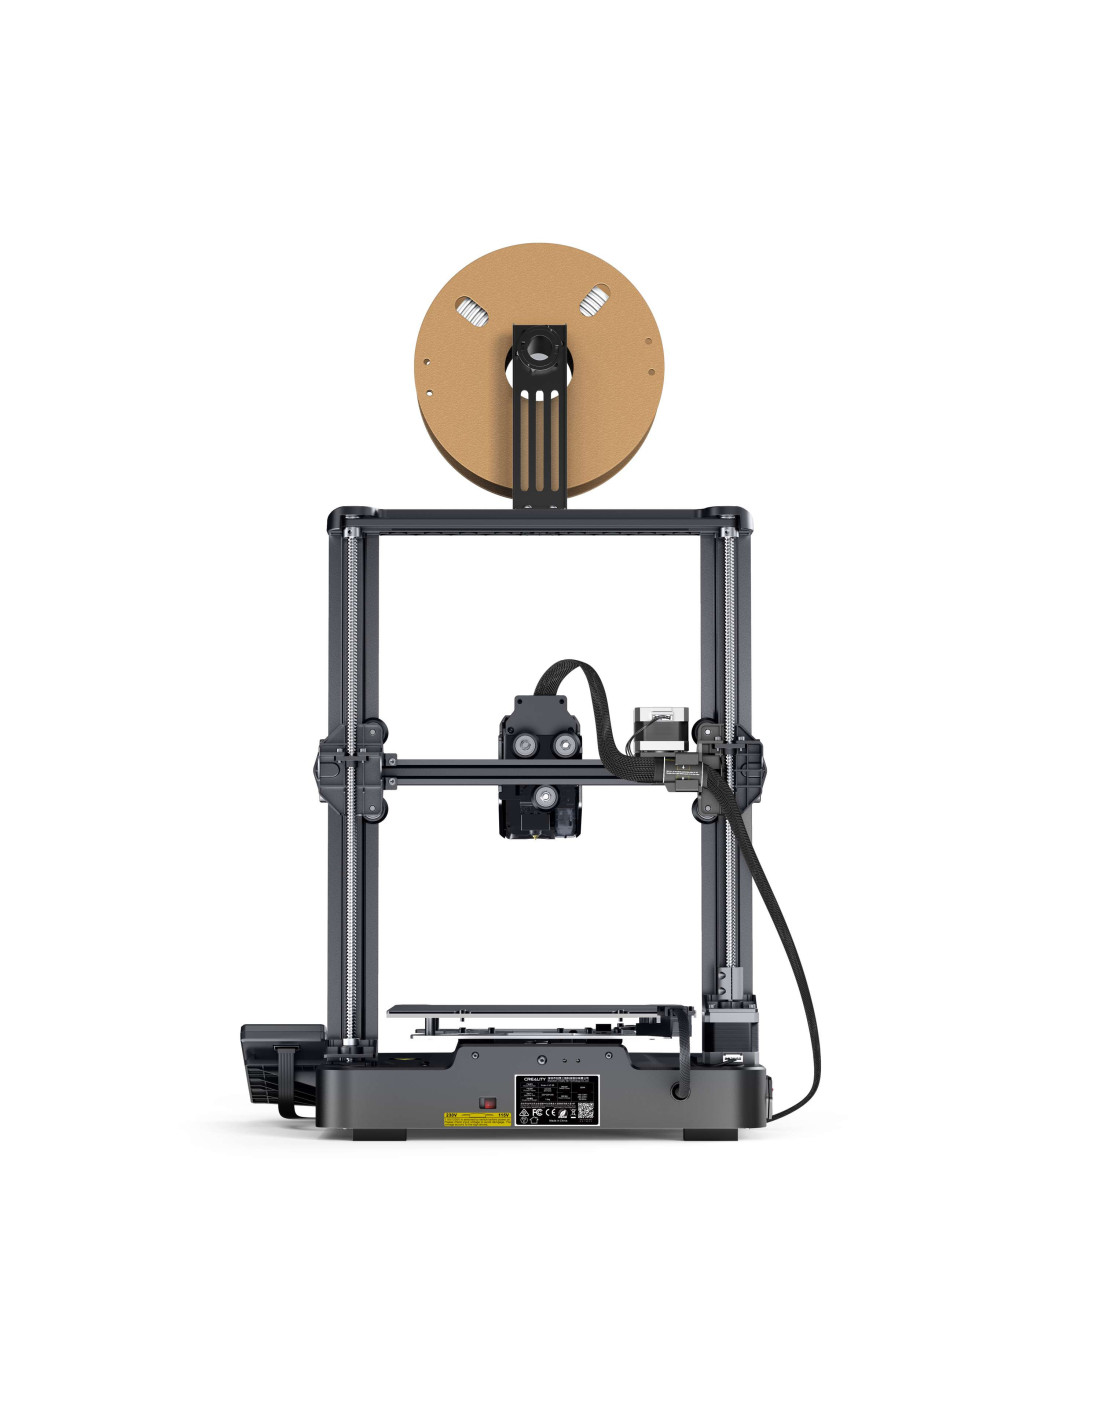 Creality Ender-3 V3 SE 3D printer